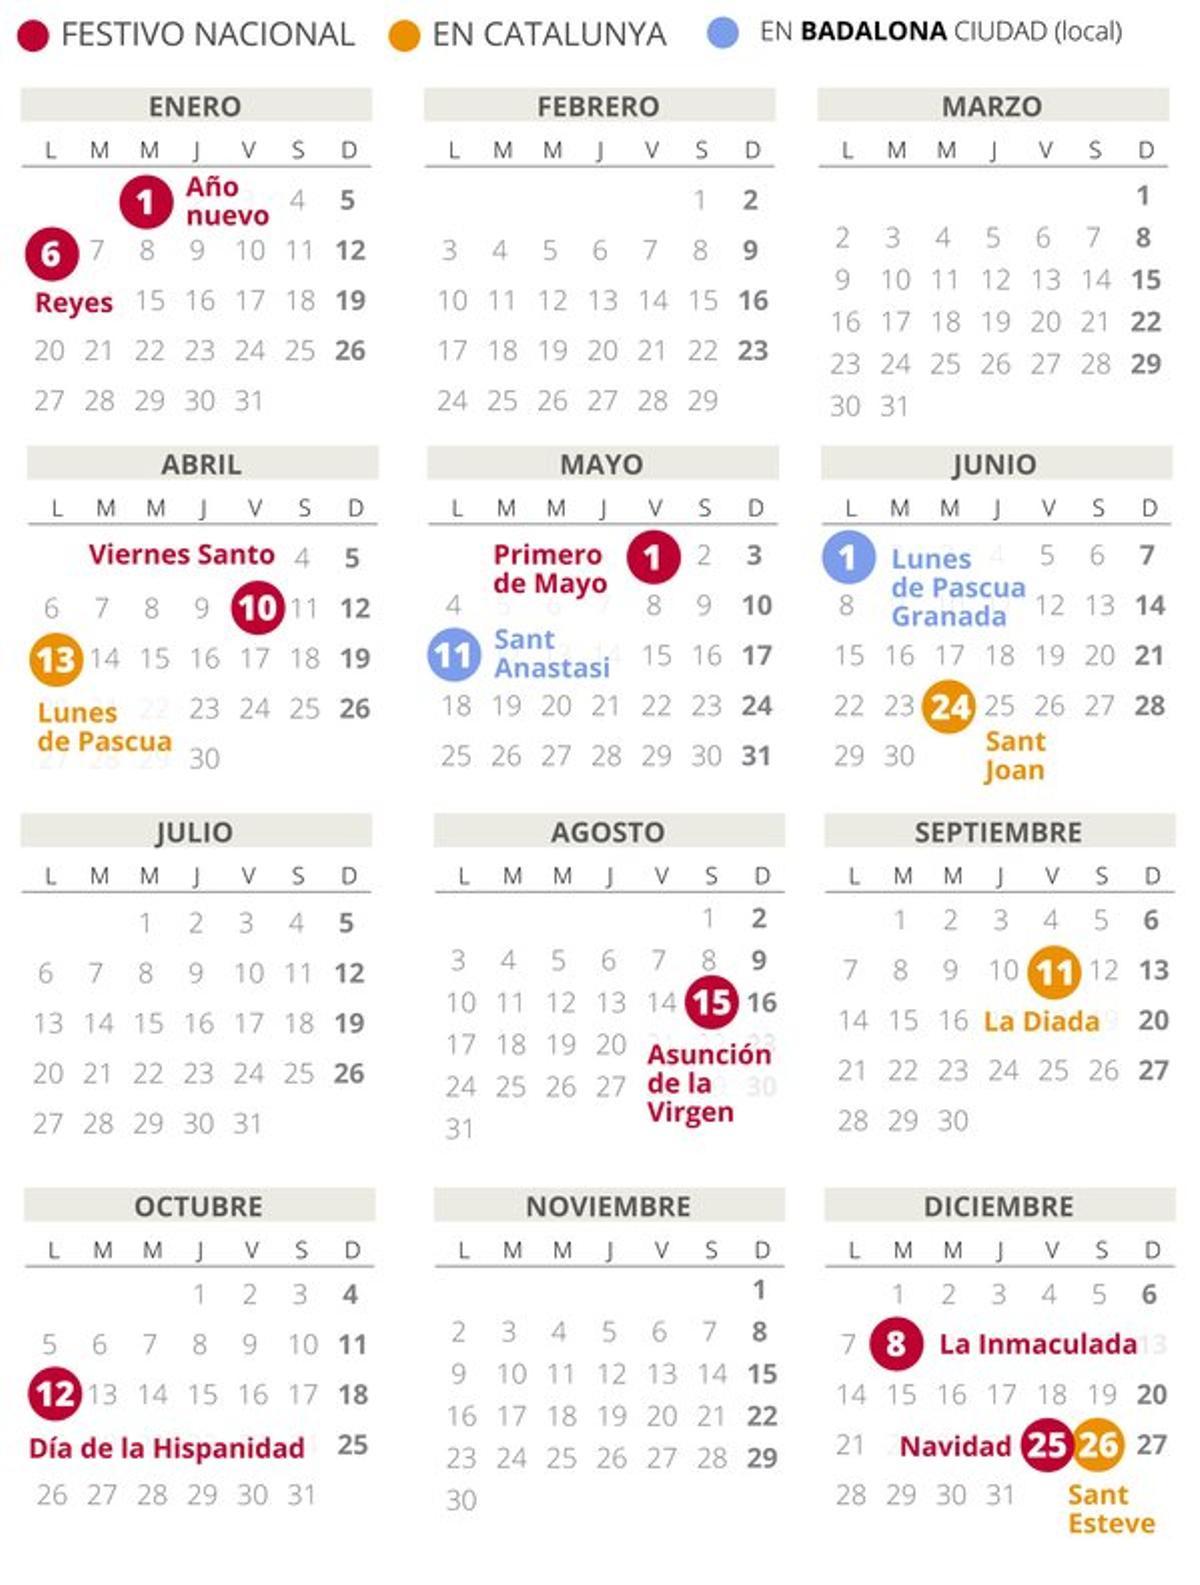 Calendario laboral de Badalona del 2020.